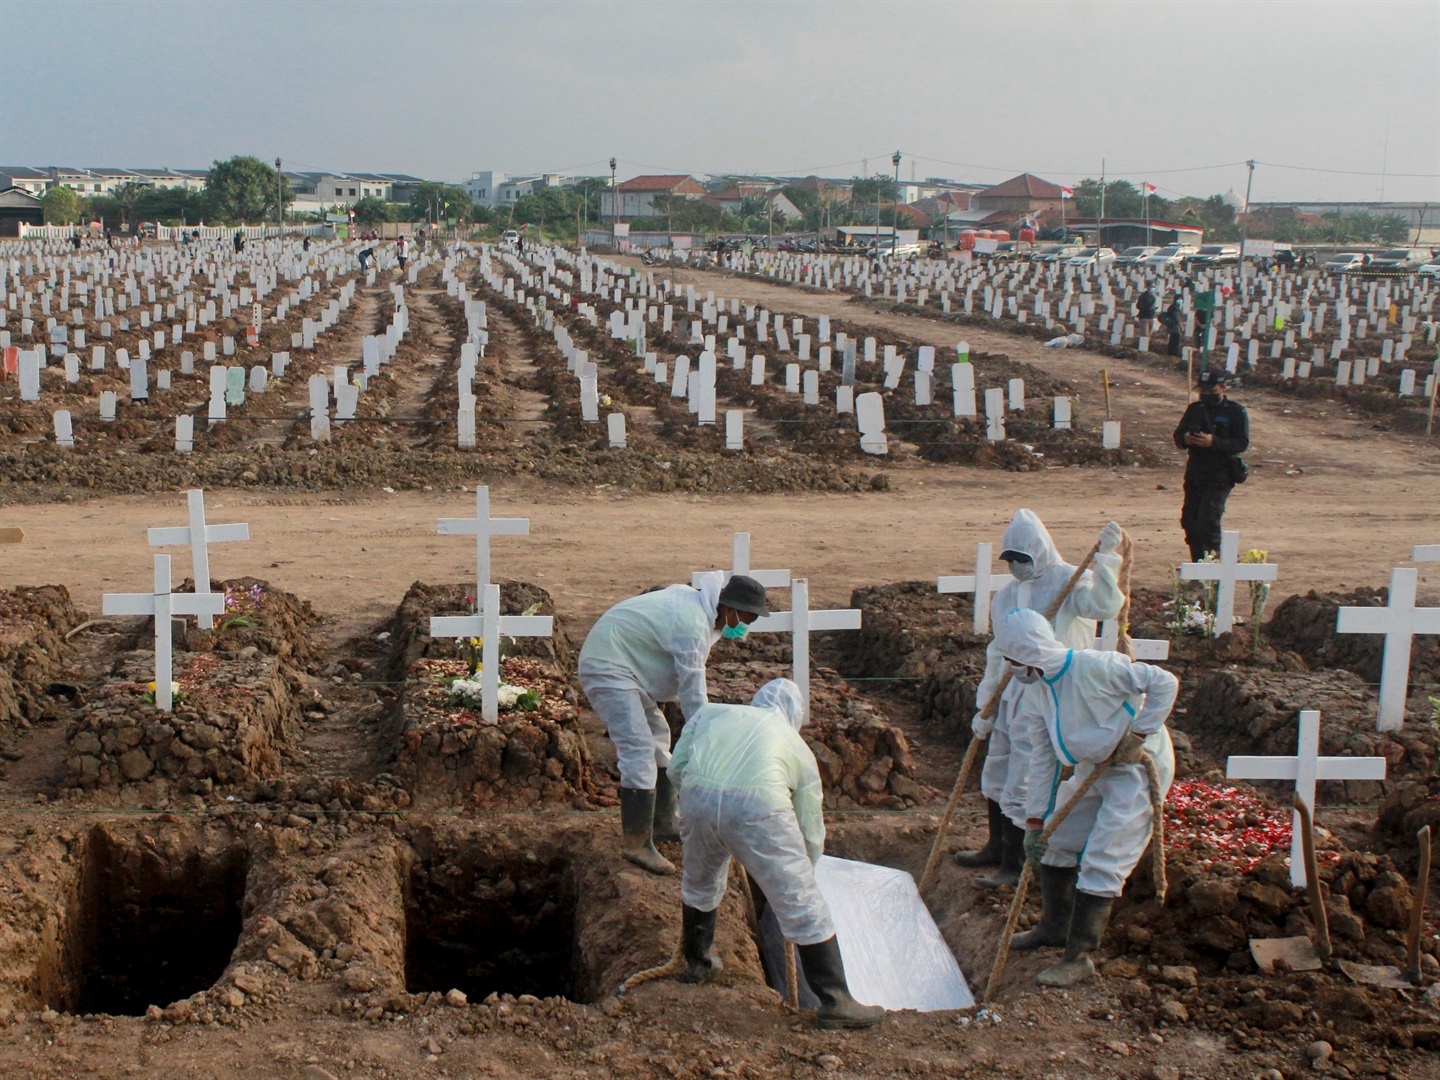 Mezar yetkilileri, 8 Ağustos 2021'de Endonezya'nın Jakarta eyaletinin Rorotan kentindeki özel bir mezarlığa Covid-19 nedeniyle ölen kurbanları gömerken görülüyor.